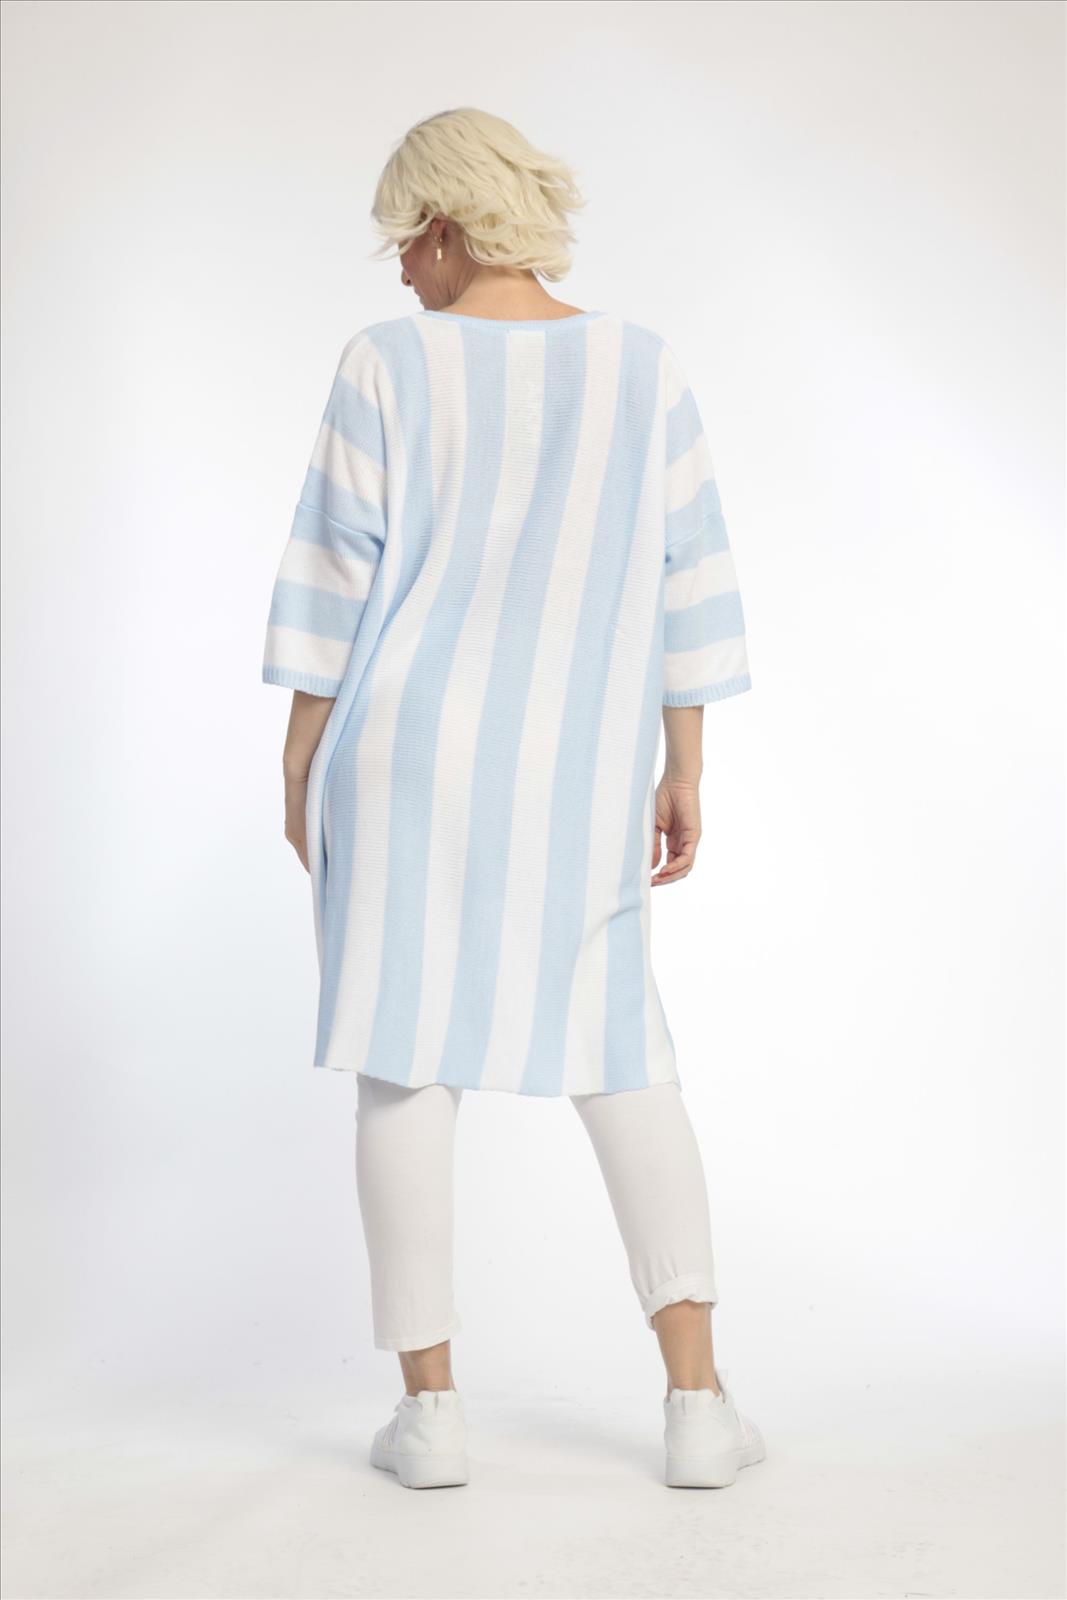 Alltags Pullover in Vokuhila Form aus feiner Strick Qualität, Hellblau-Weiß Lagenlook Oversize Mode B2B Großhandel